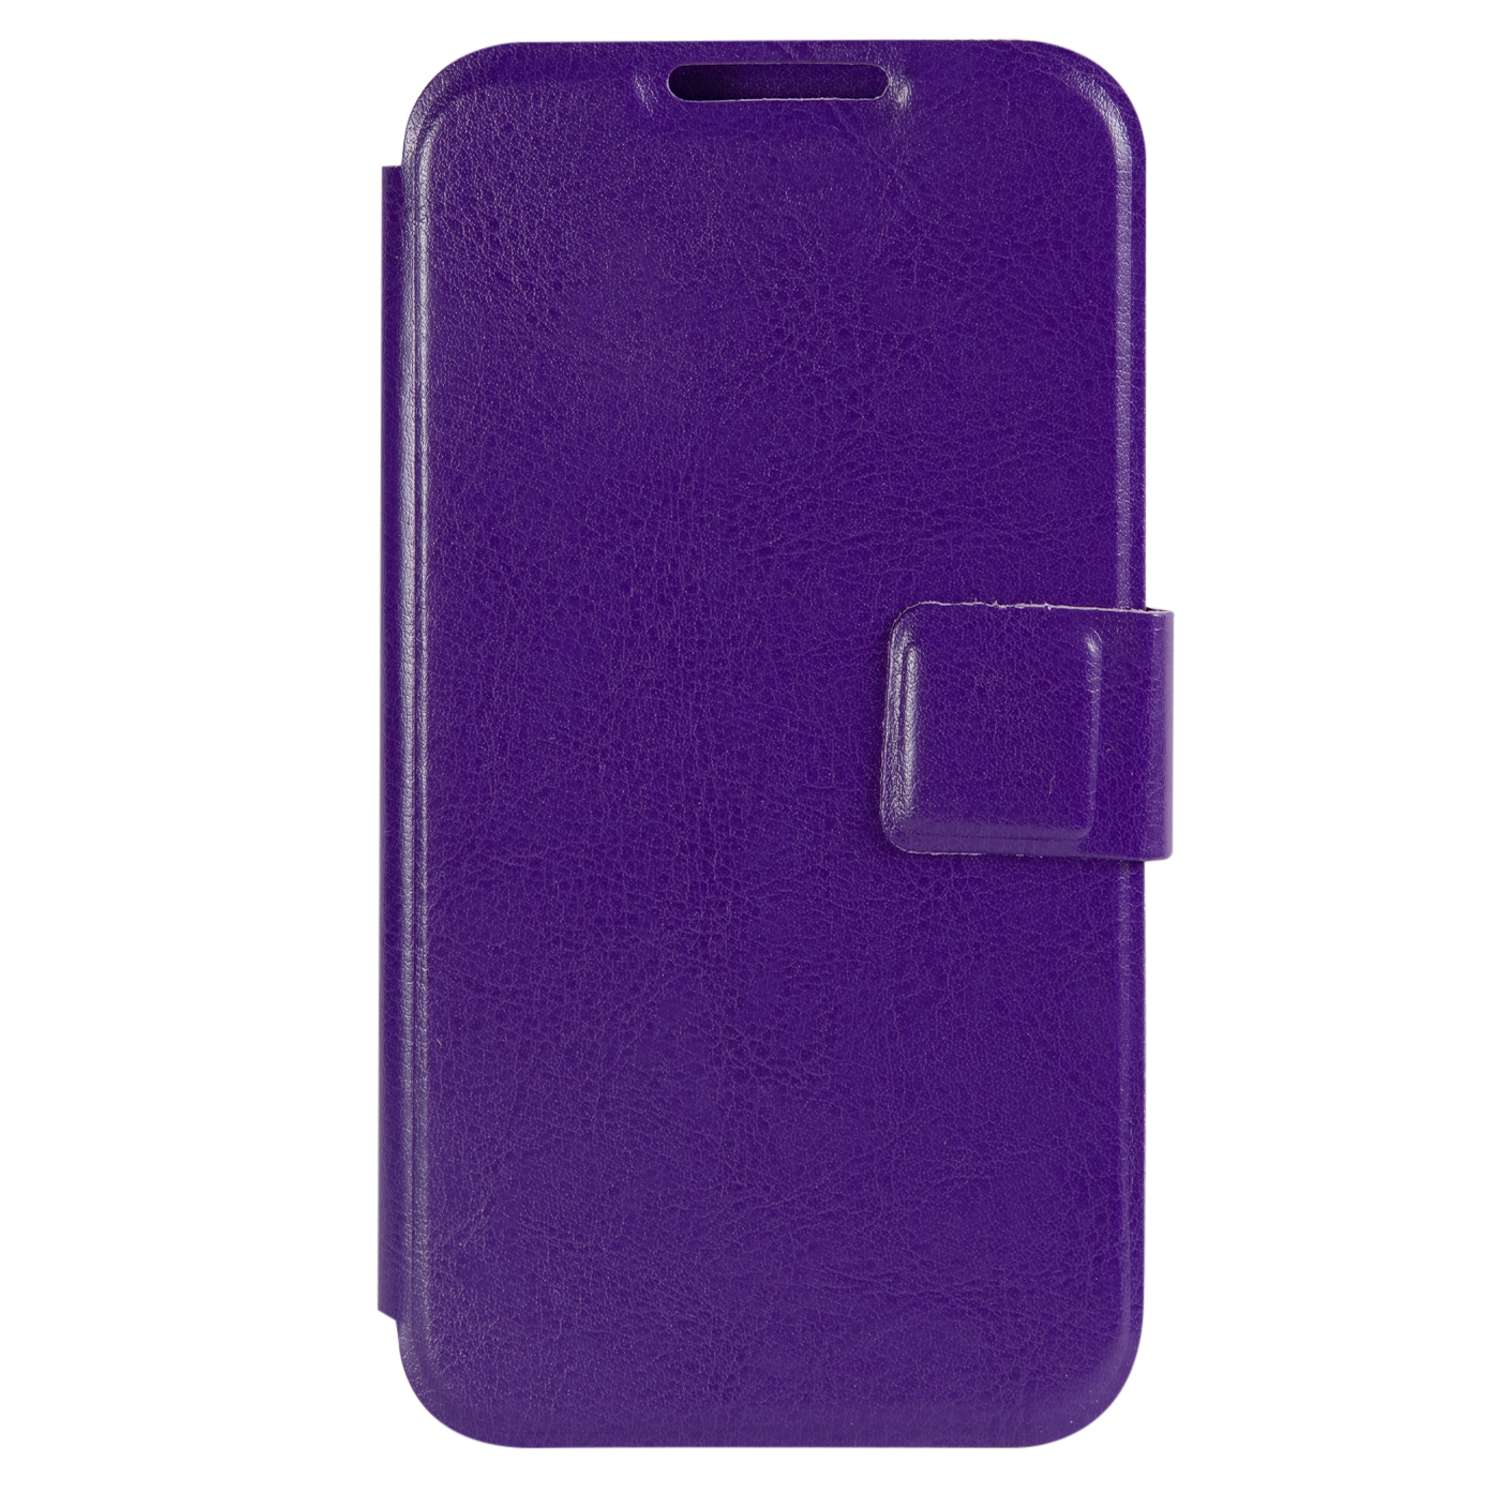 Чехол универсальный iBox Universal для телефонов 4.2-5 дюйма фиолетовый - фото 3